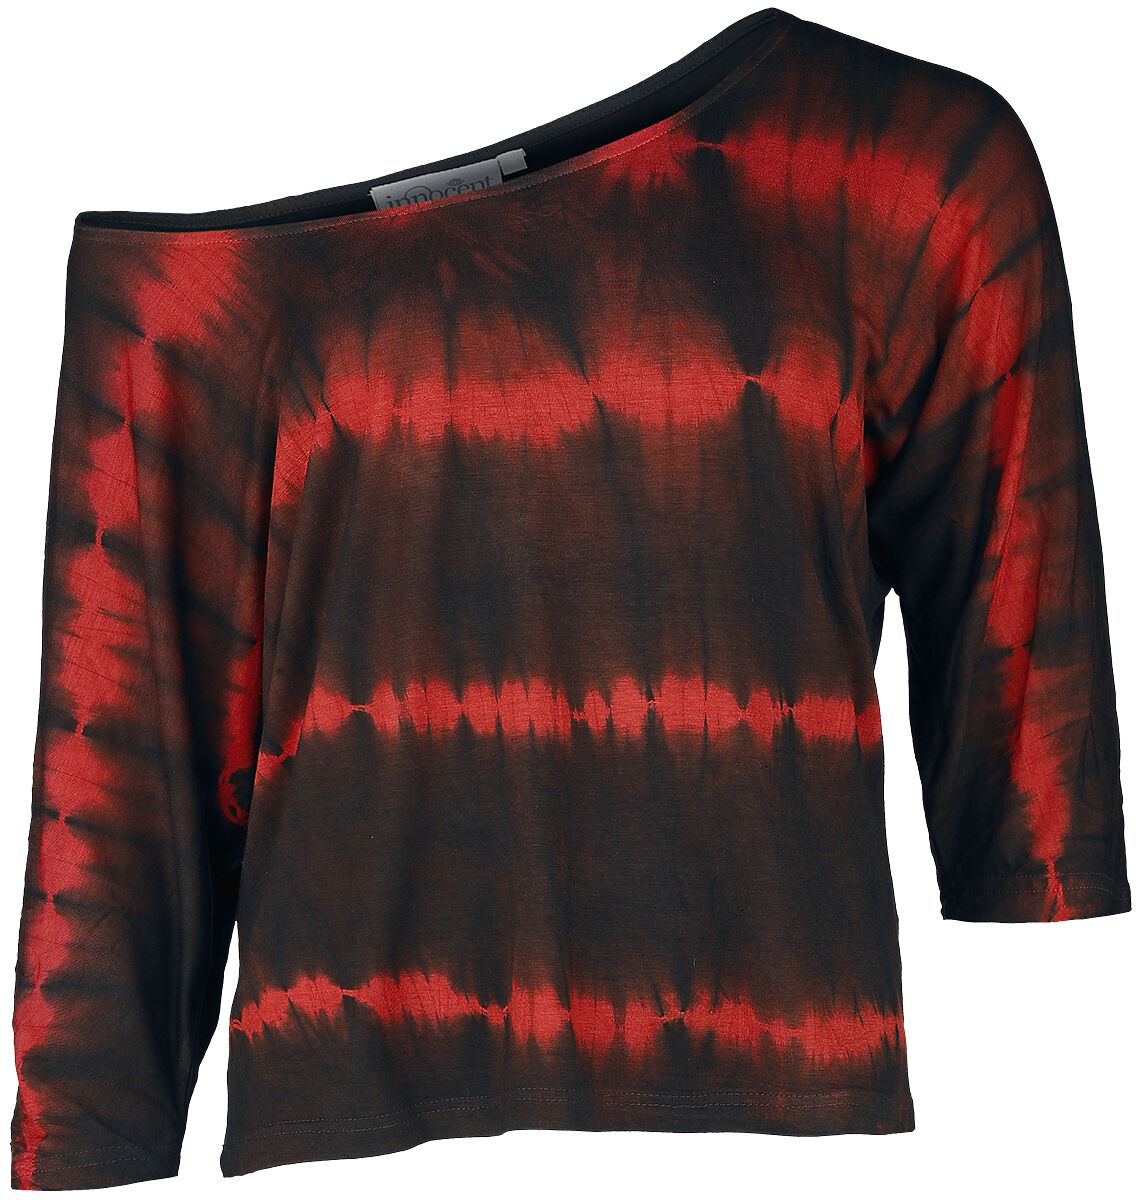 Innocent - Gothic Langarmshirt - Solana Top - XS bis 4XL - für Damen - Größe XL - schwarz/rot